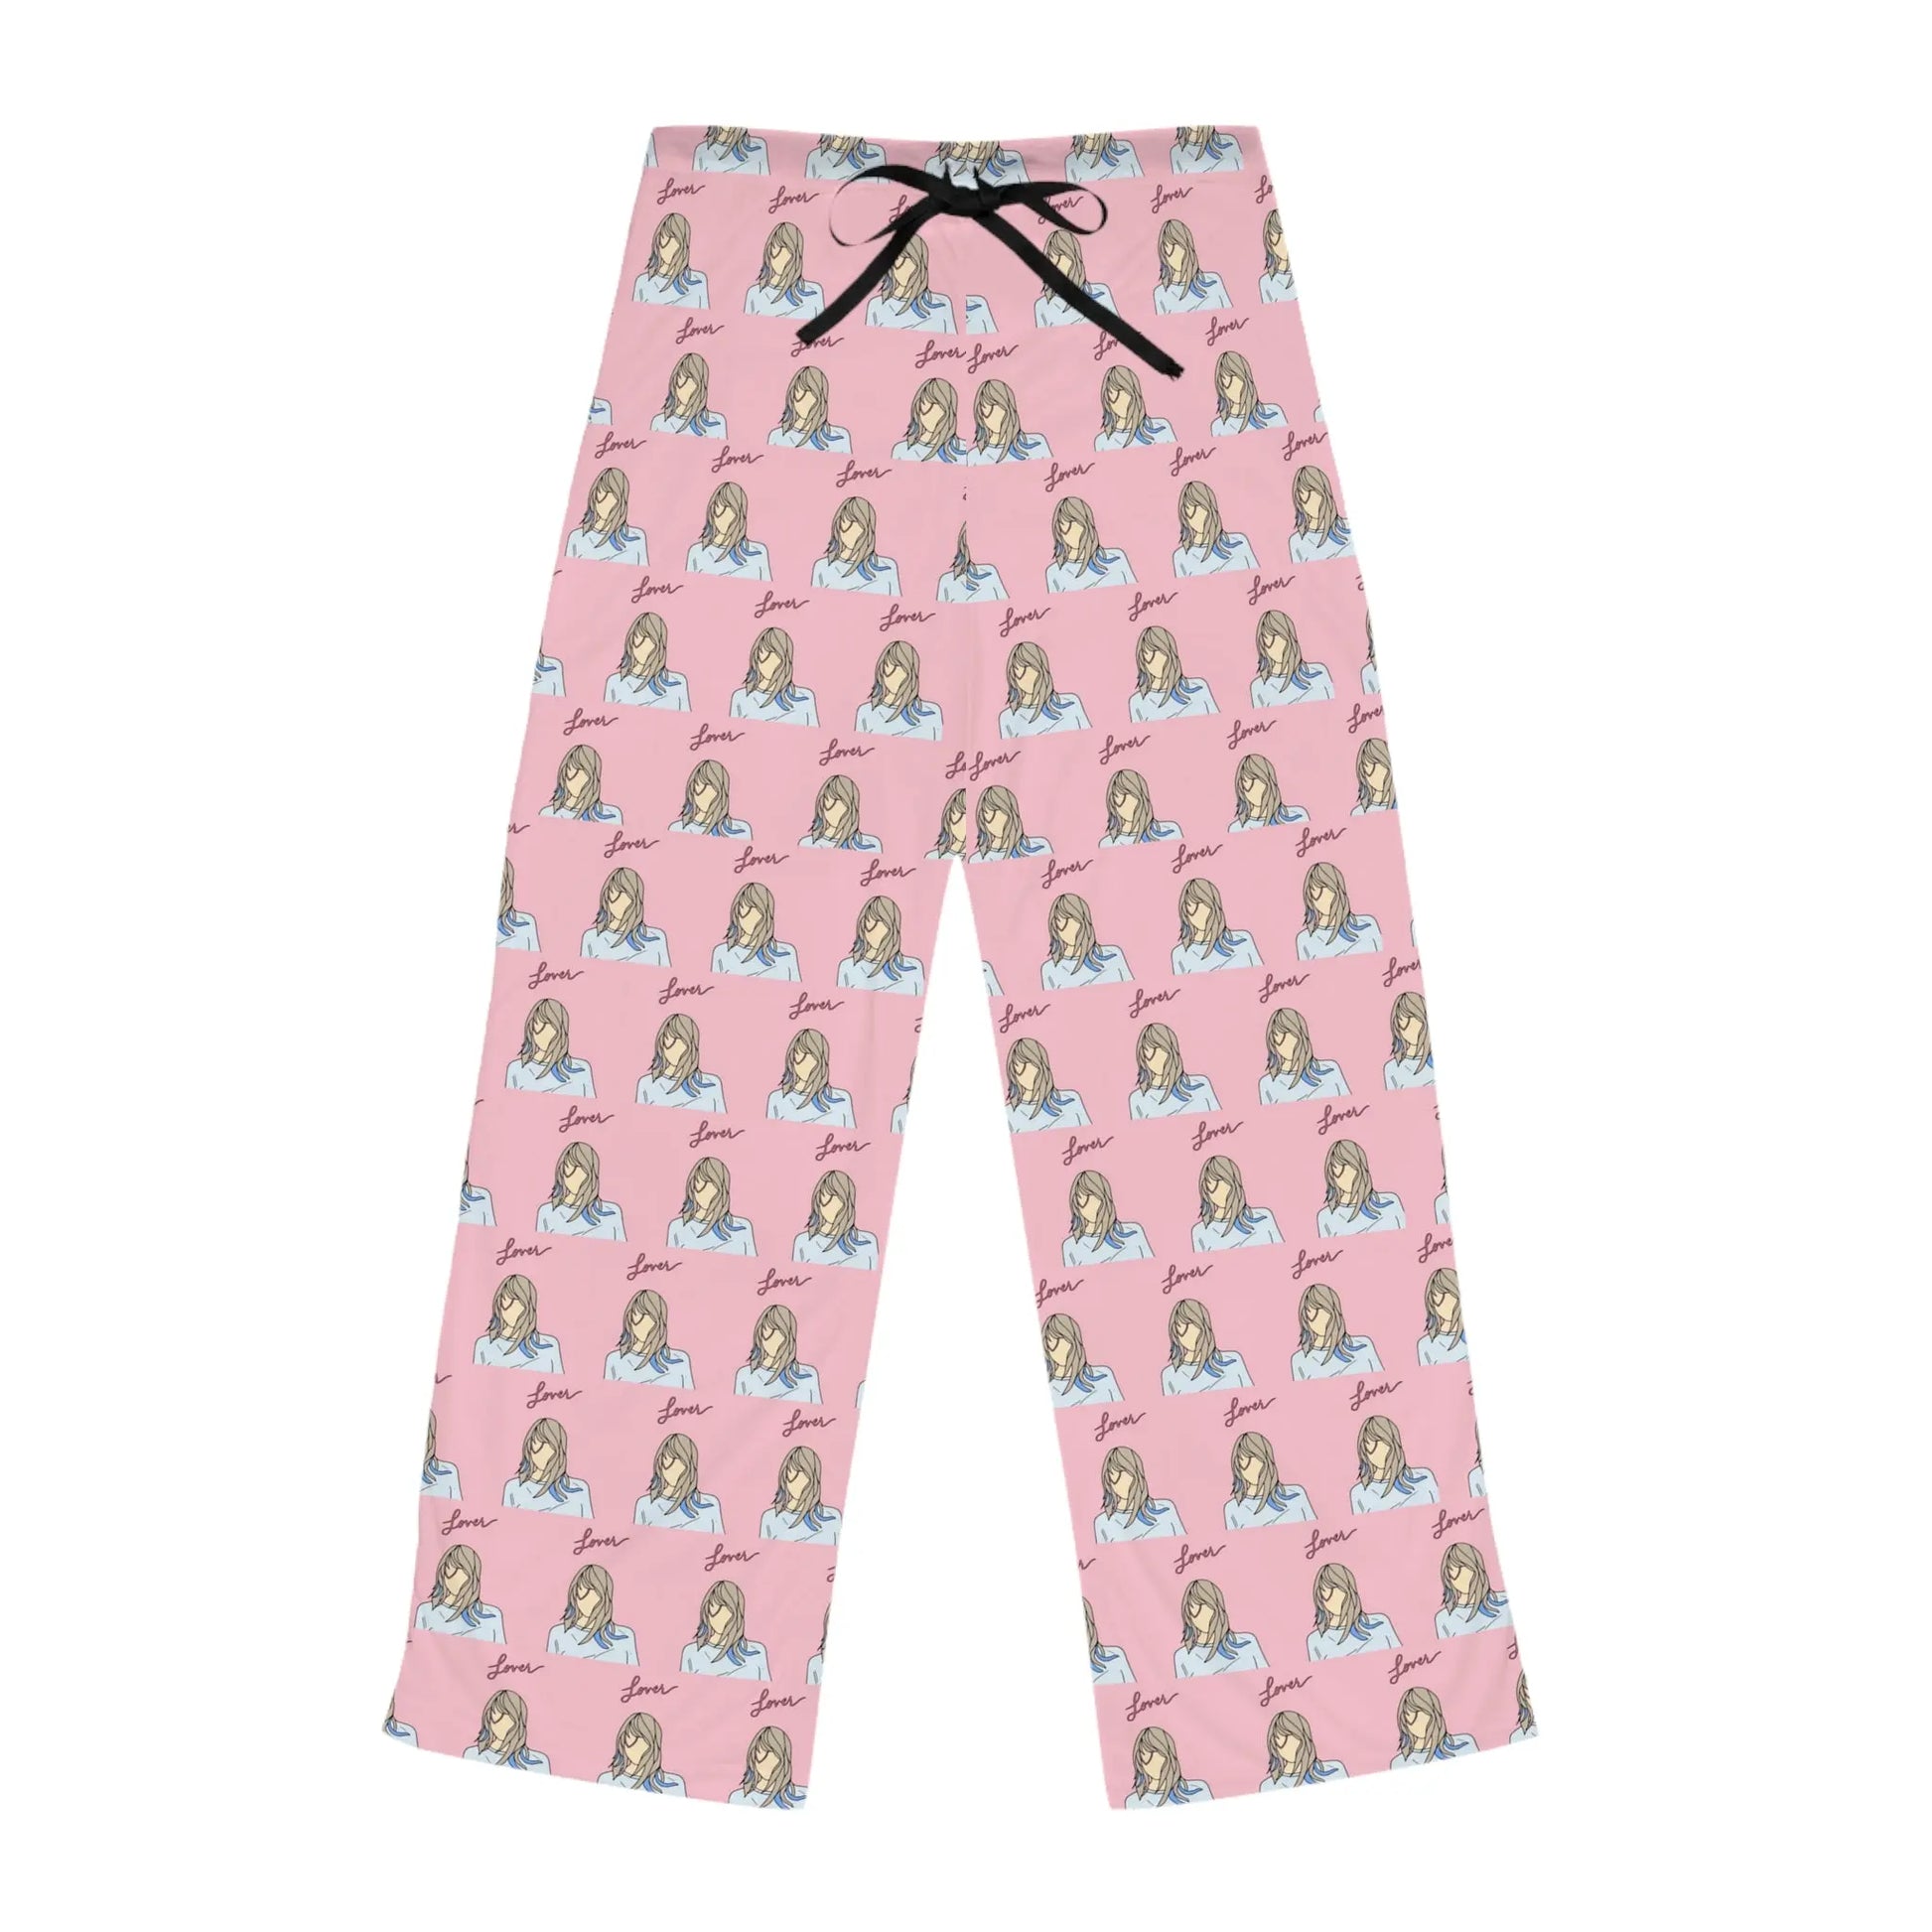 Shop Chic & Comfy Women's Pajama Pants